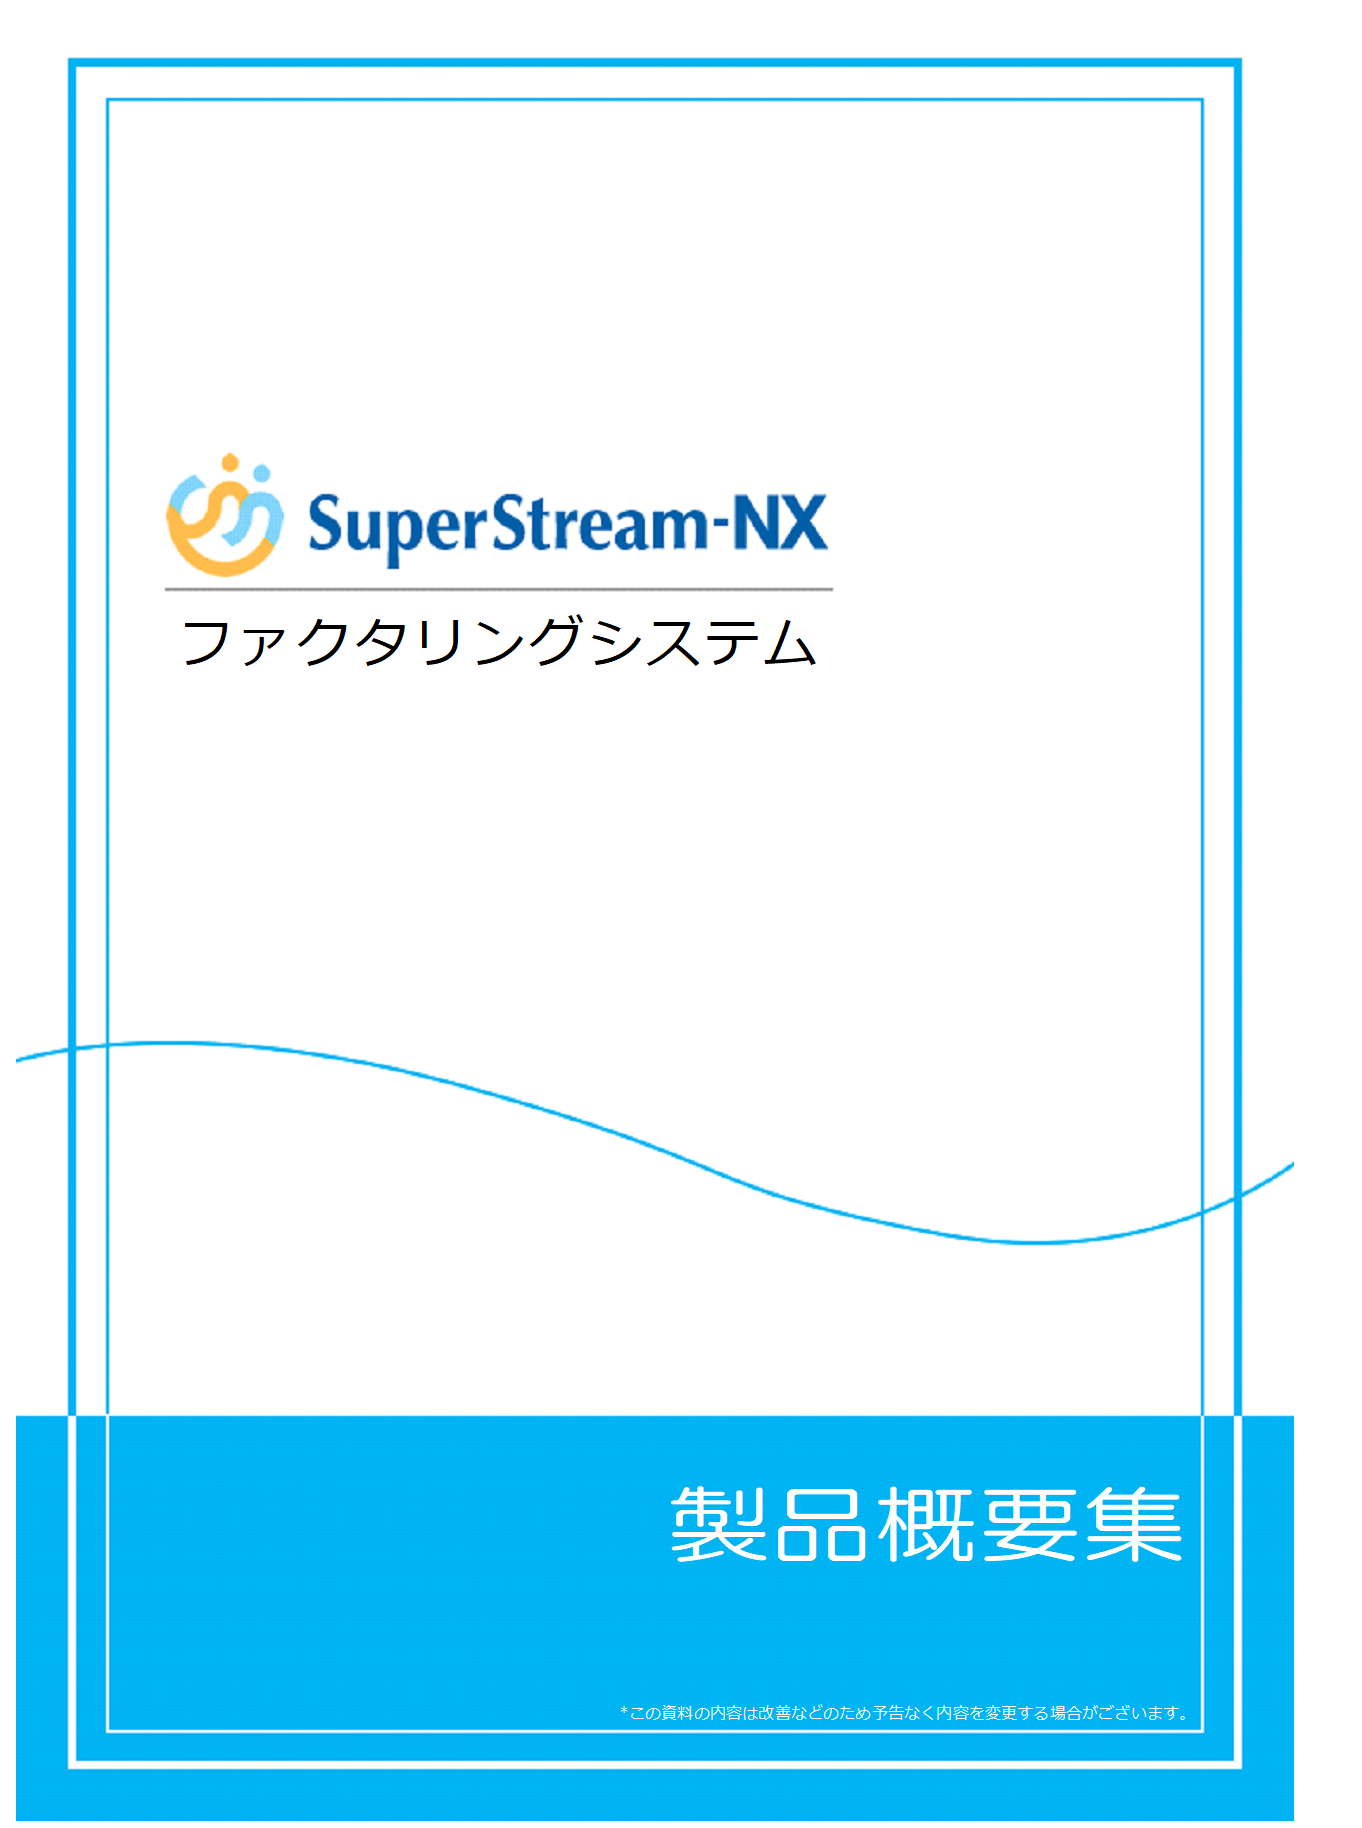 SuperStream-NX ファクタリング製品概要集